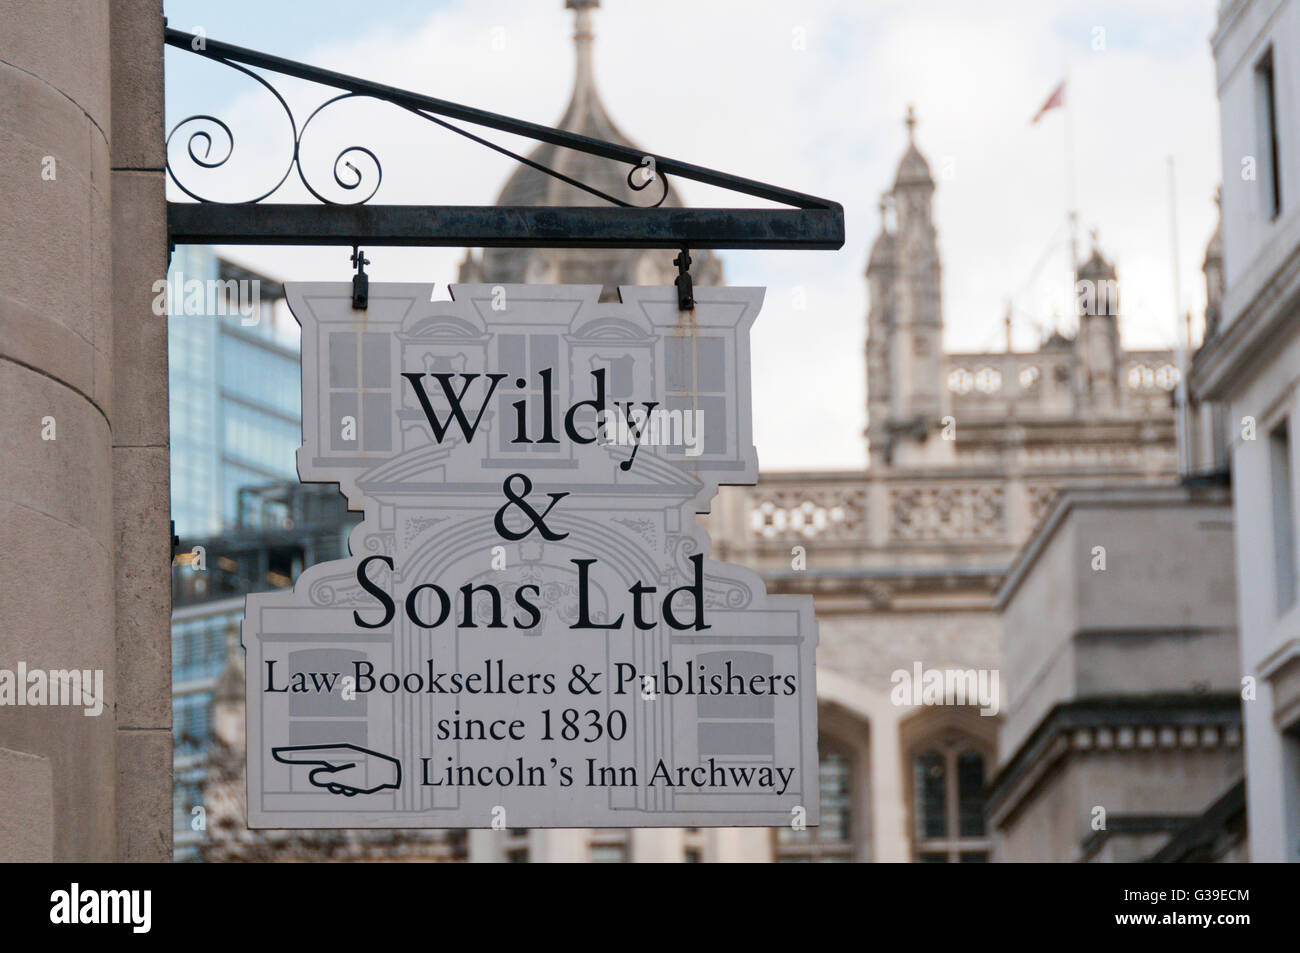 Ein Zeichen für Wildy & Sons Ltd, Recht Buchhändler in London. Stockfoto